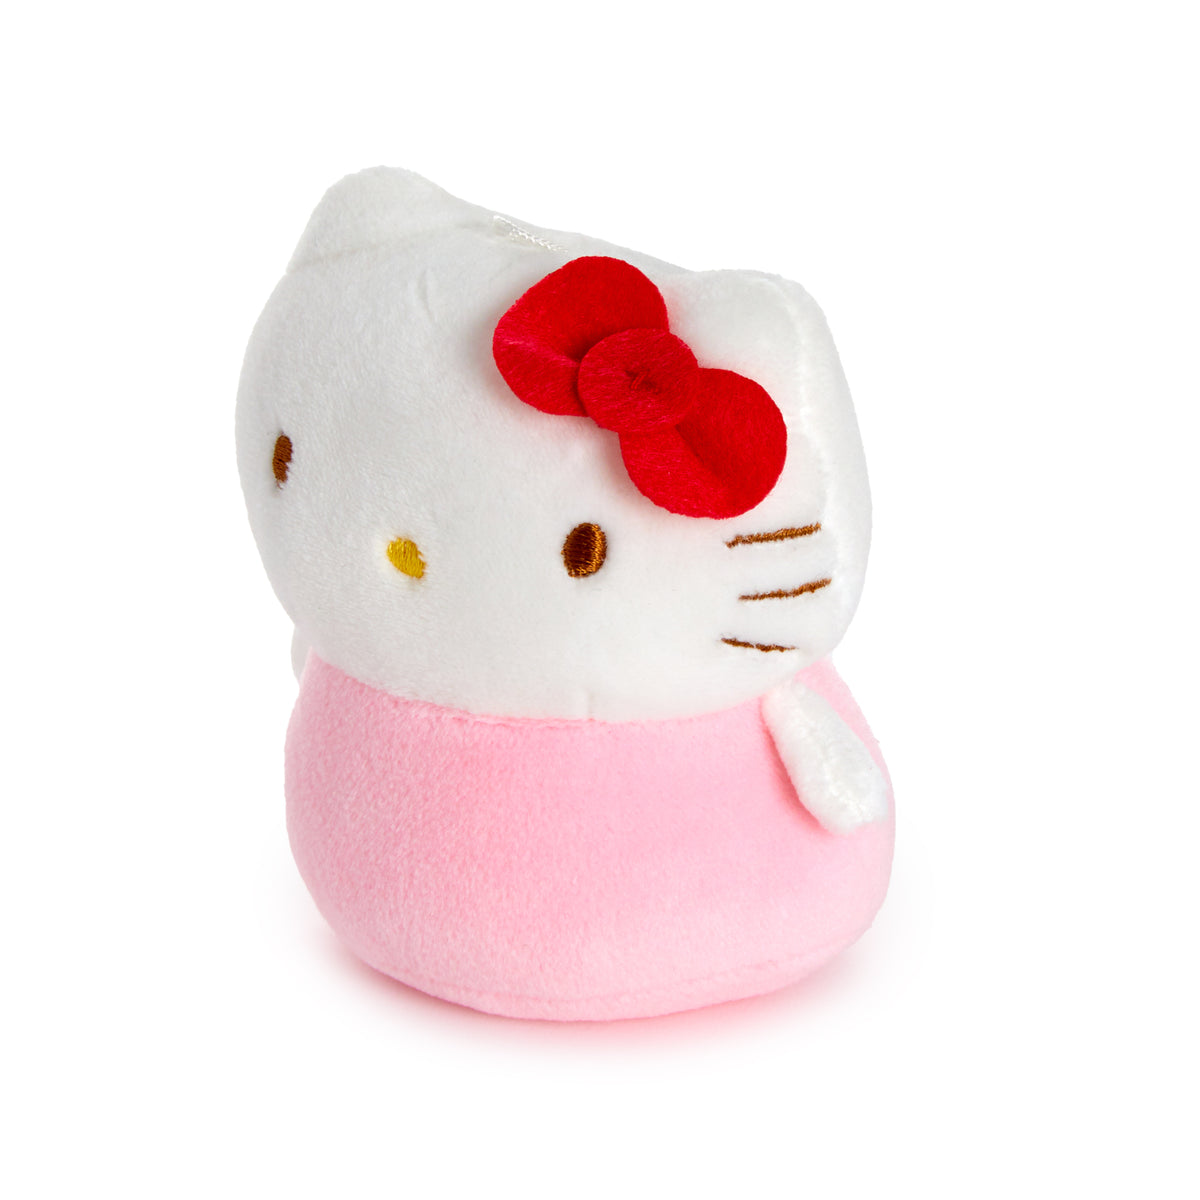 Hello Kitty Soft Mascot Plush Plush Japan Original   